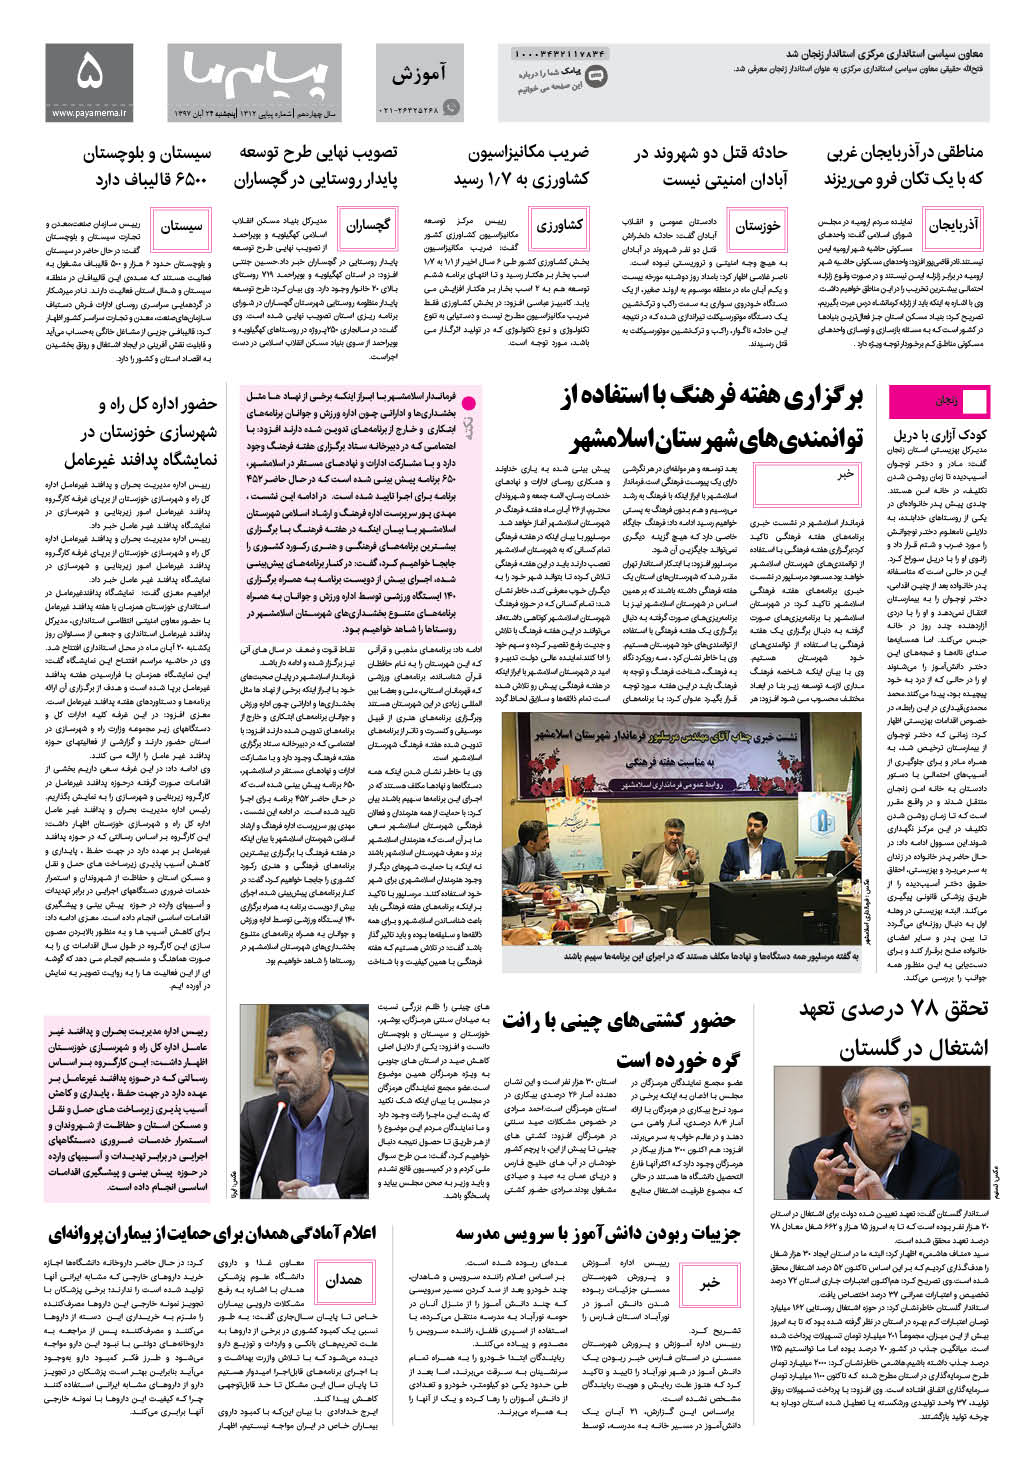 صفحه پیام ایران شماره 1312 روزنامه پیام ما